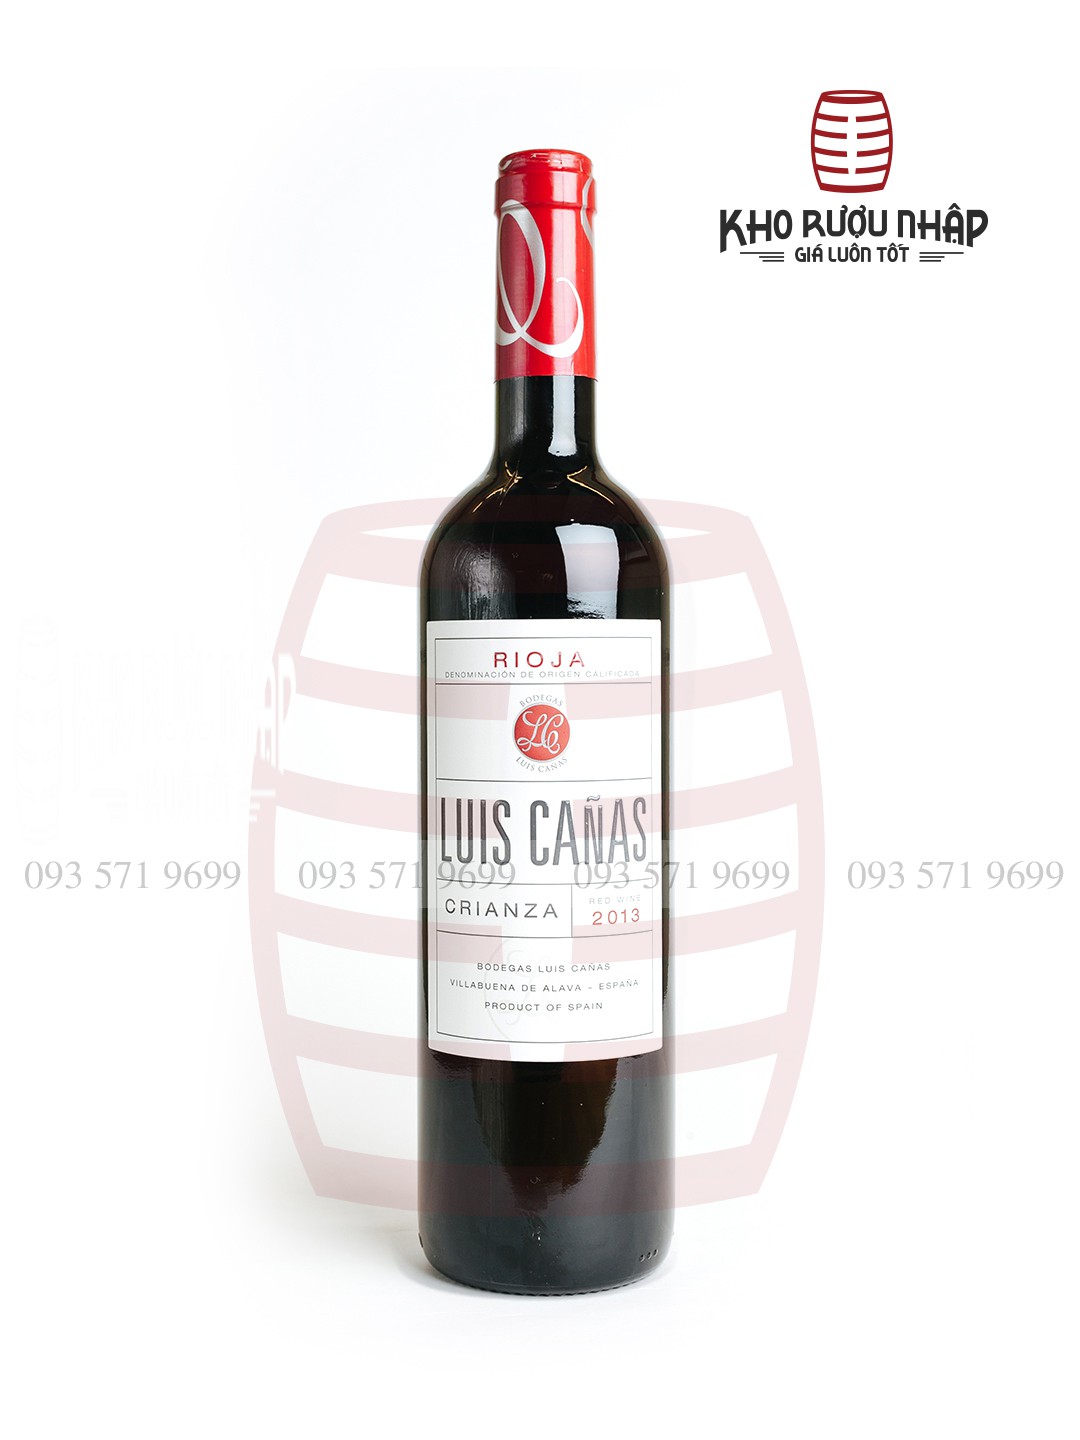 Rượu vang Luis Canas Crianza – NIE1-650 Cao cấp chính hãng